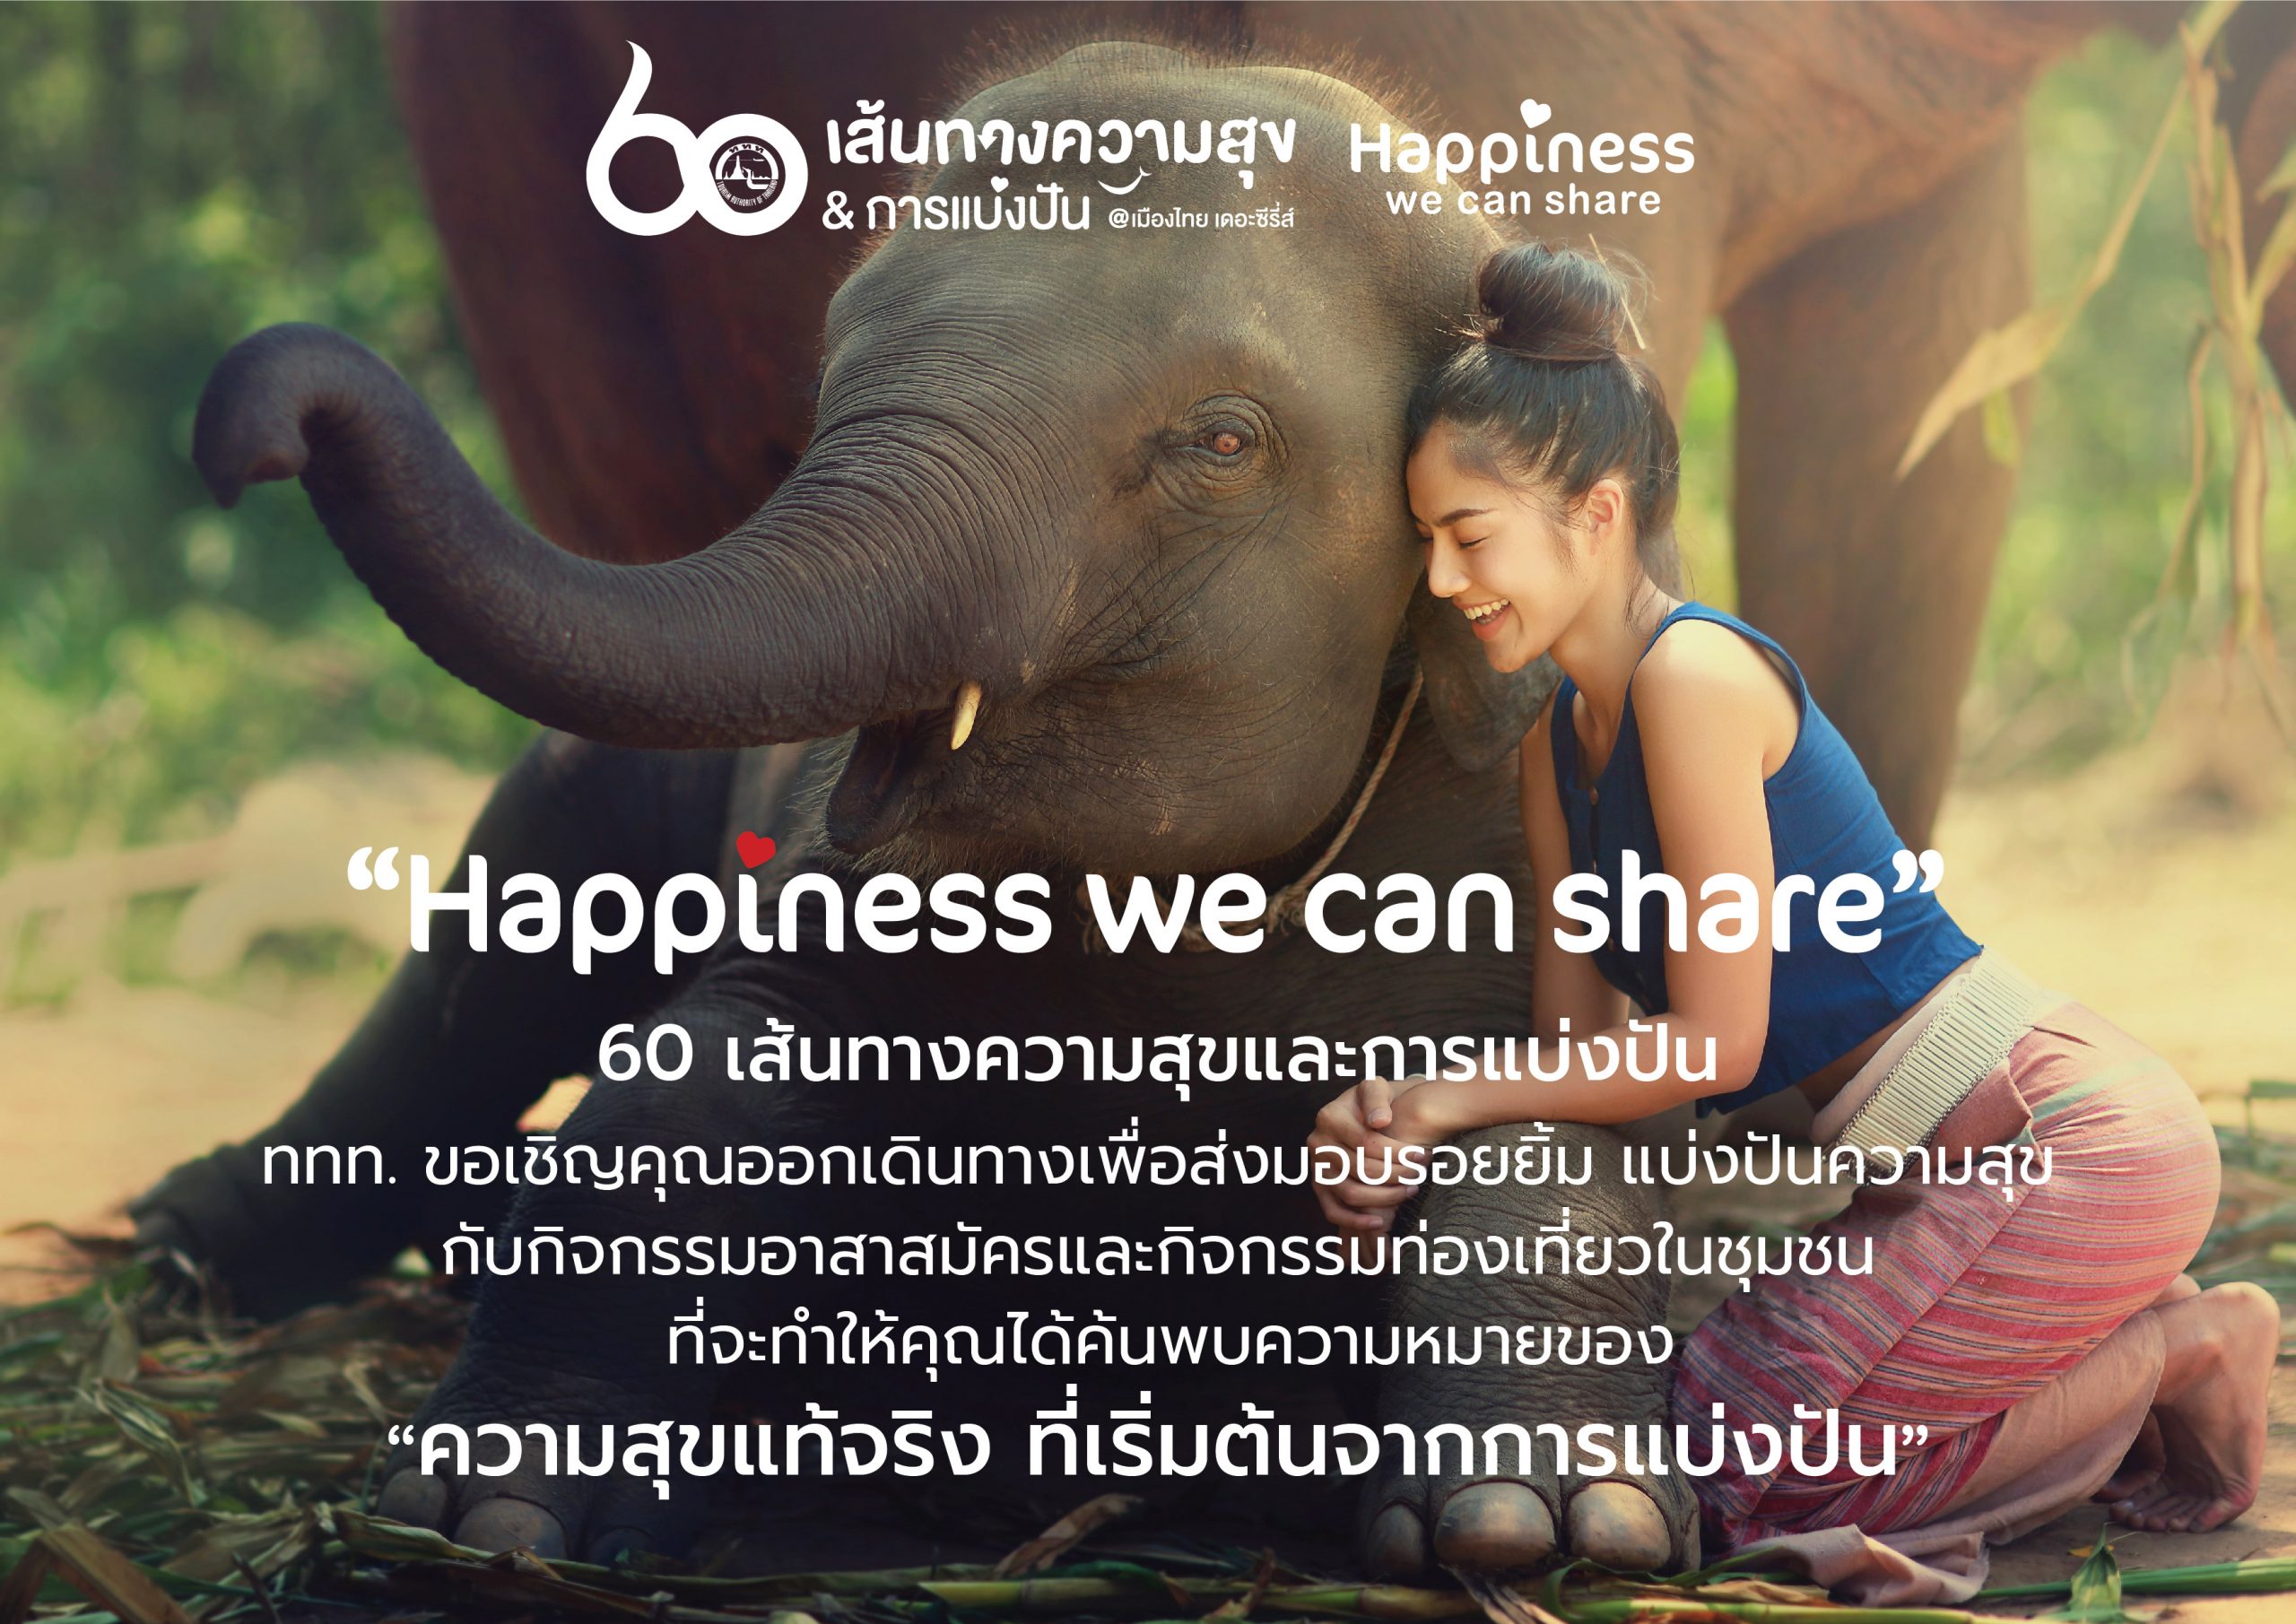 ททท. ชวนนักท่องเที่ยวออกเดินทางไปกับทริปท่องเที่ยวจิตอาสา ทั่วไทยในแคมเปญ Happiness we can share